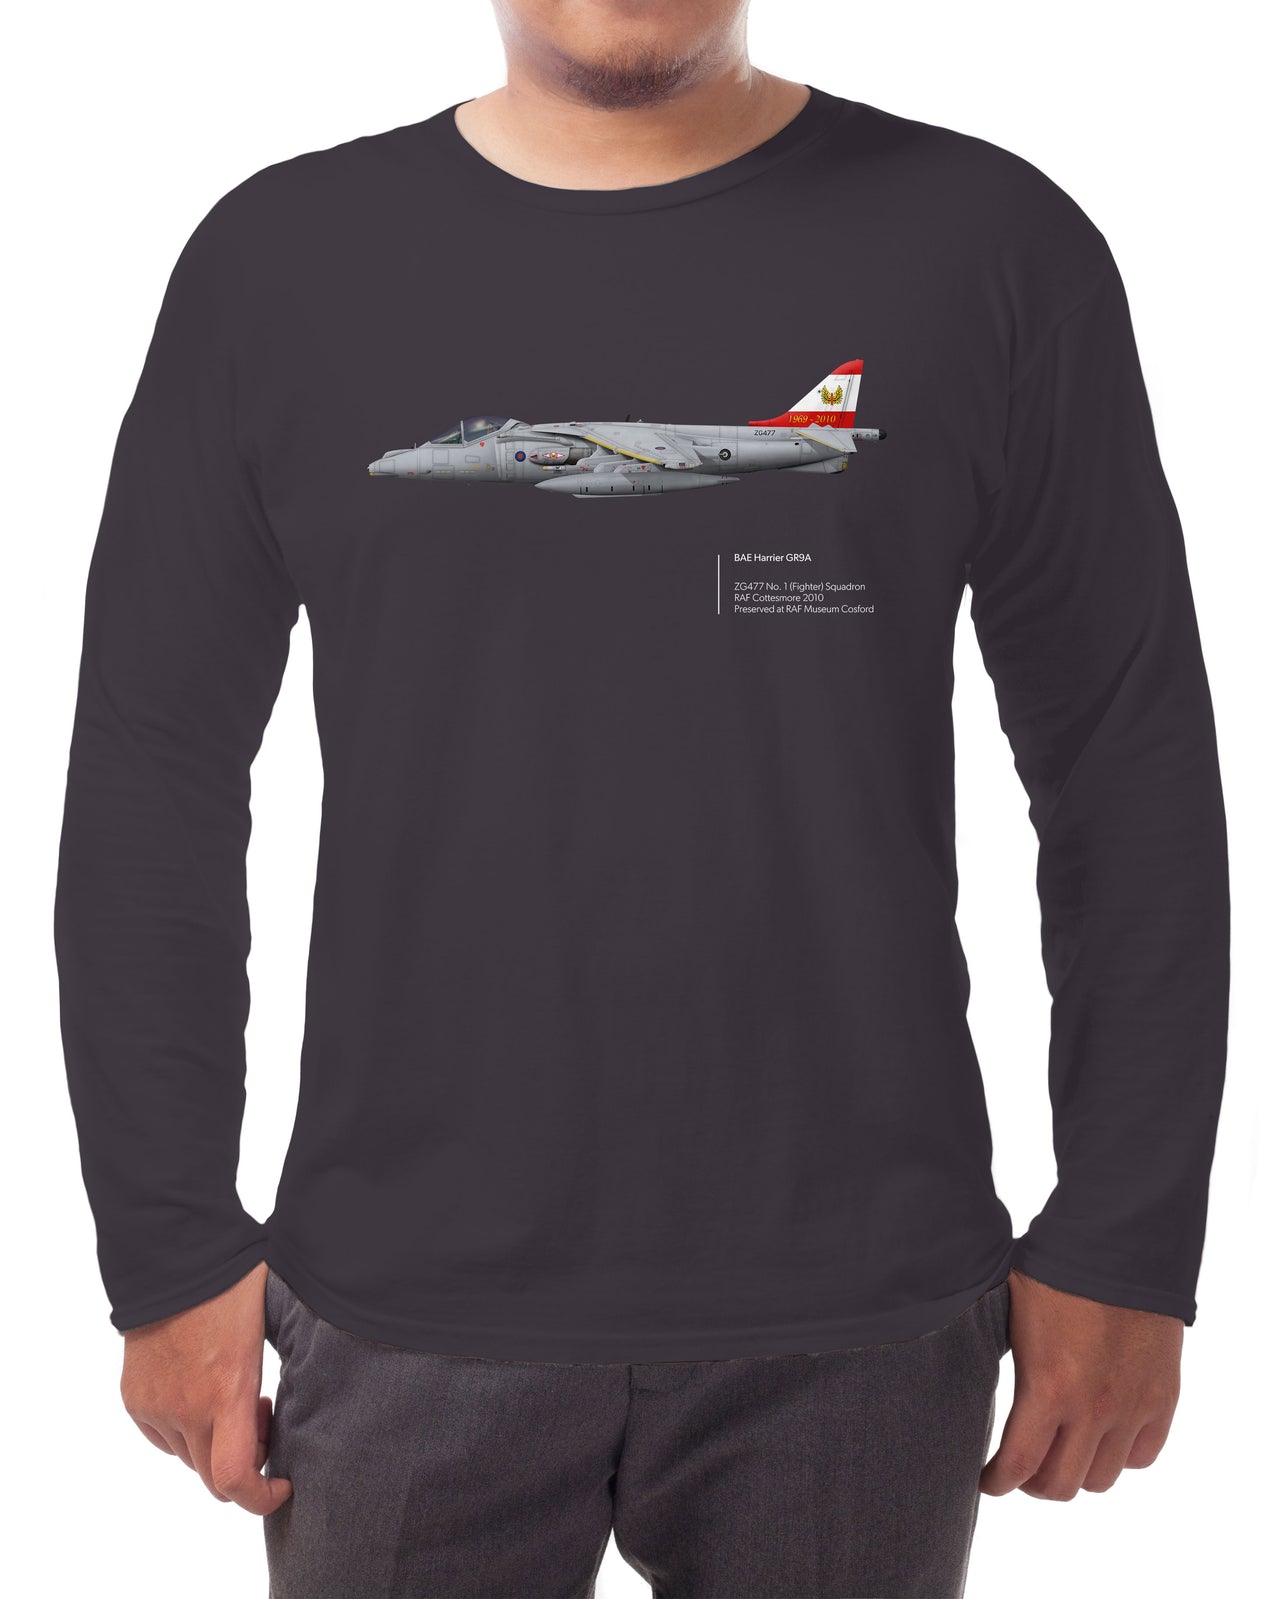 Harrier GR9 - Long-sleeve T-shirt